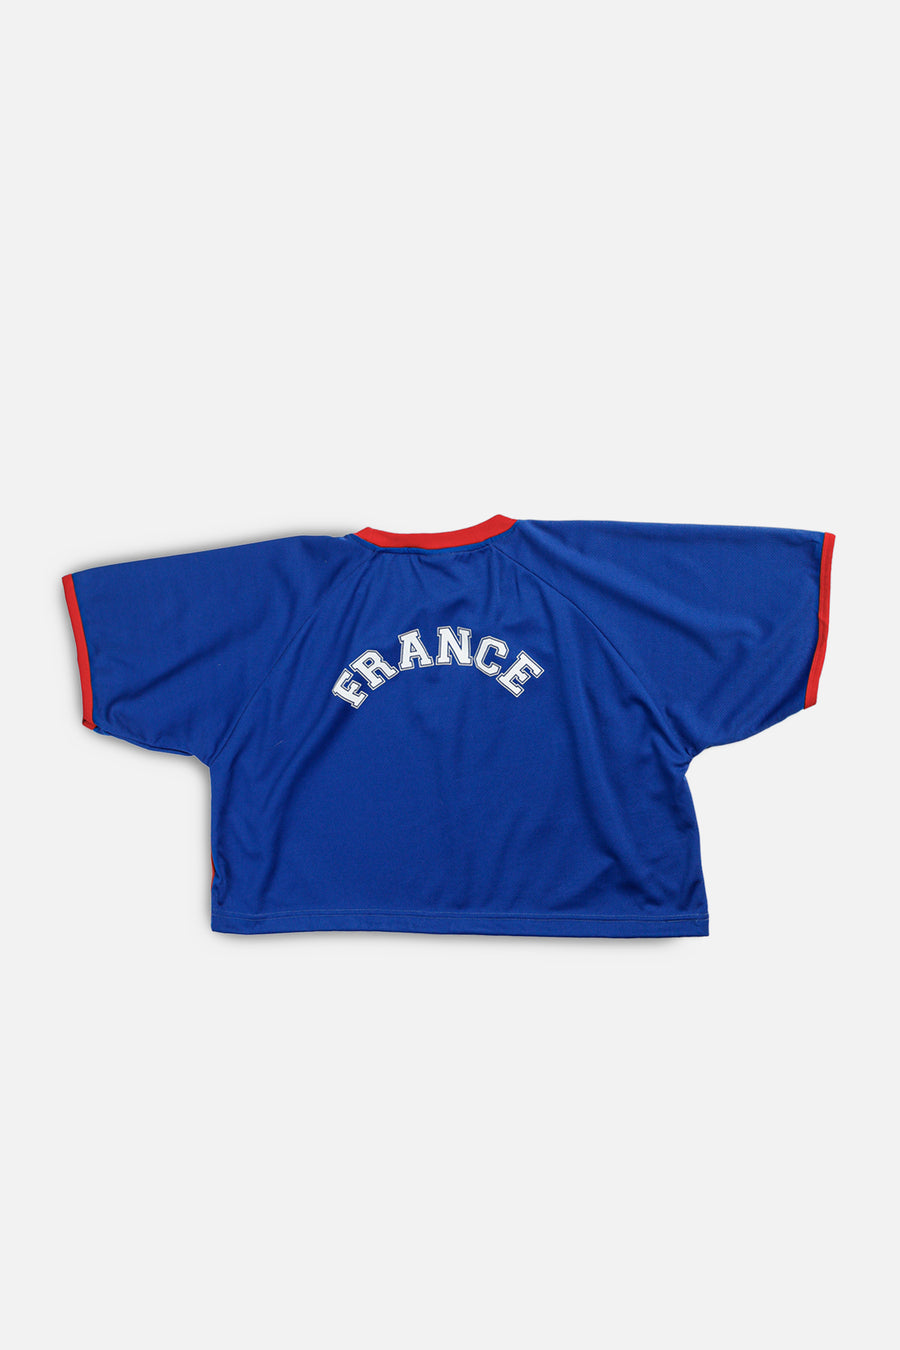 Rework Crop France Soccer Jersey - XL